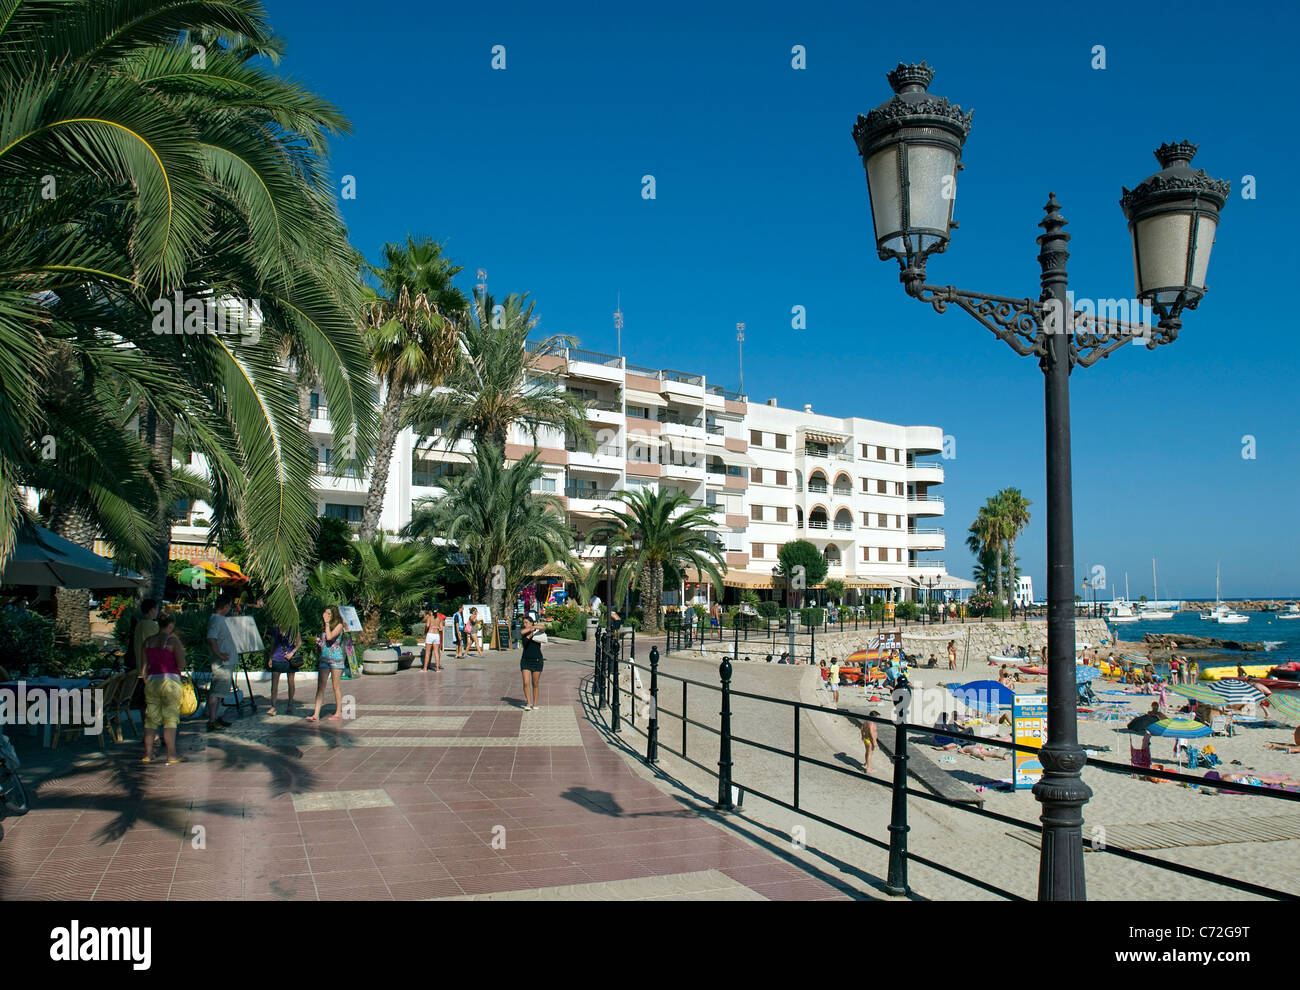 Sul lungomare di Santa Eulalia, Ibiza, Spagna Foto Stock